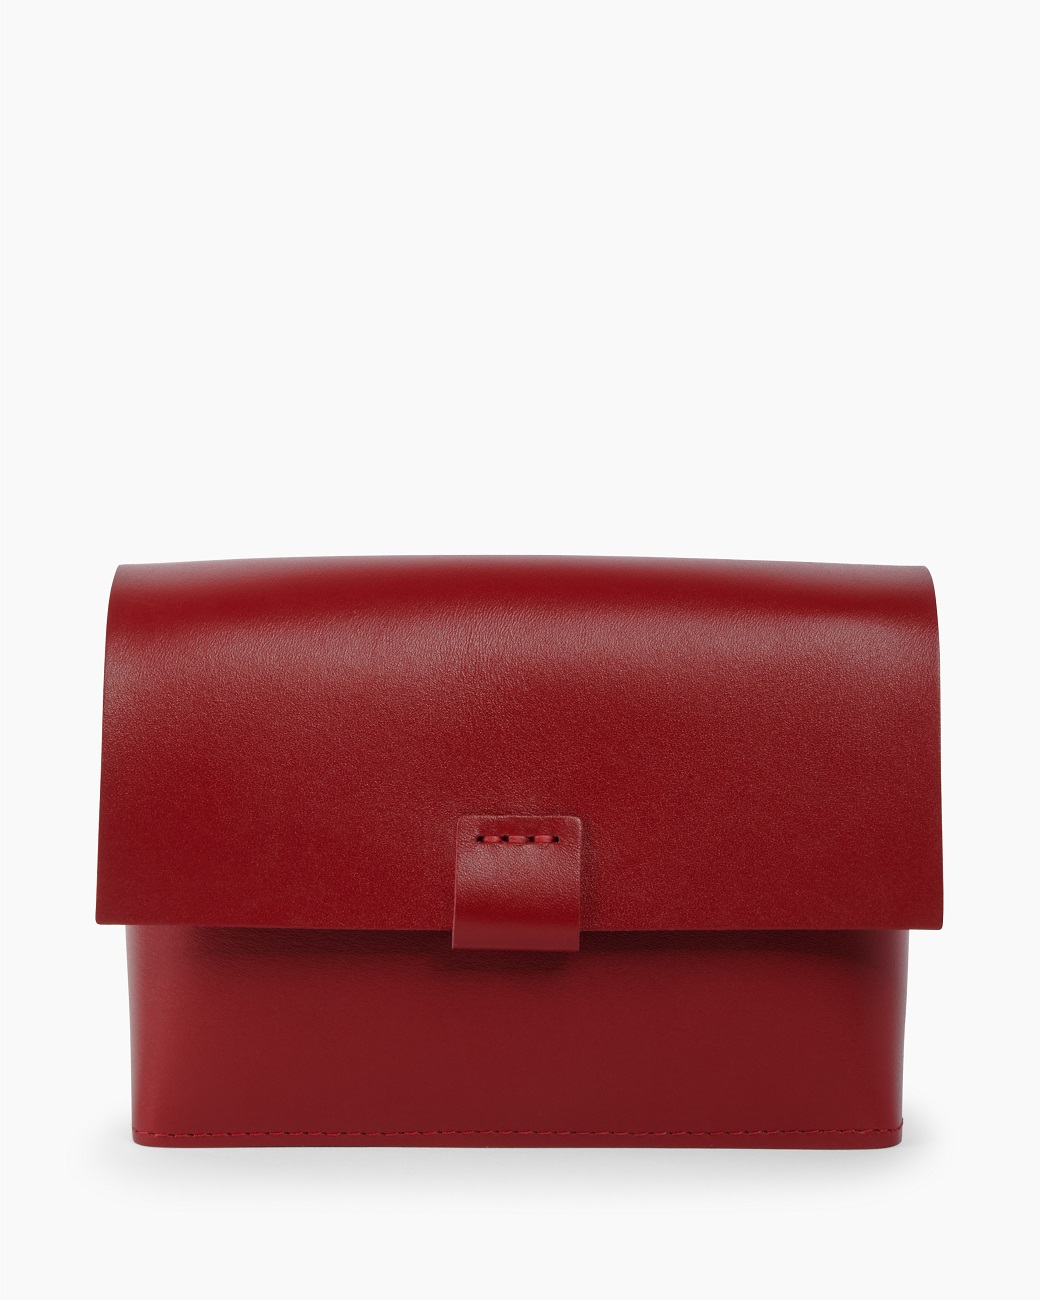 Кожаная женская поясная сумка красная A004 ruby